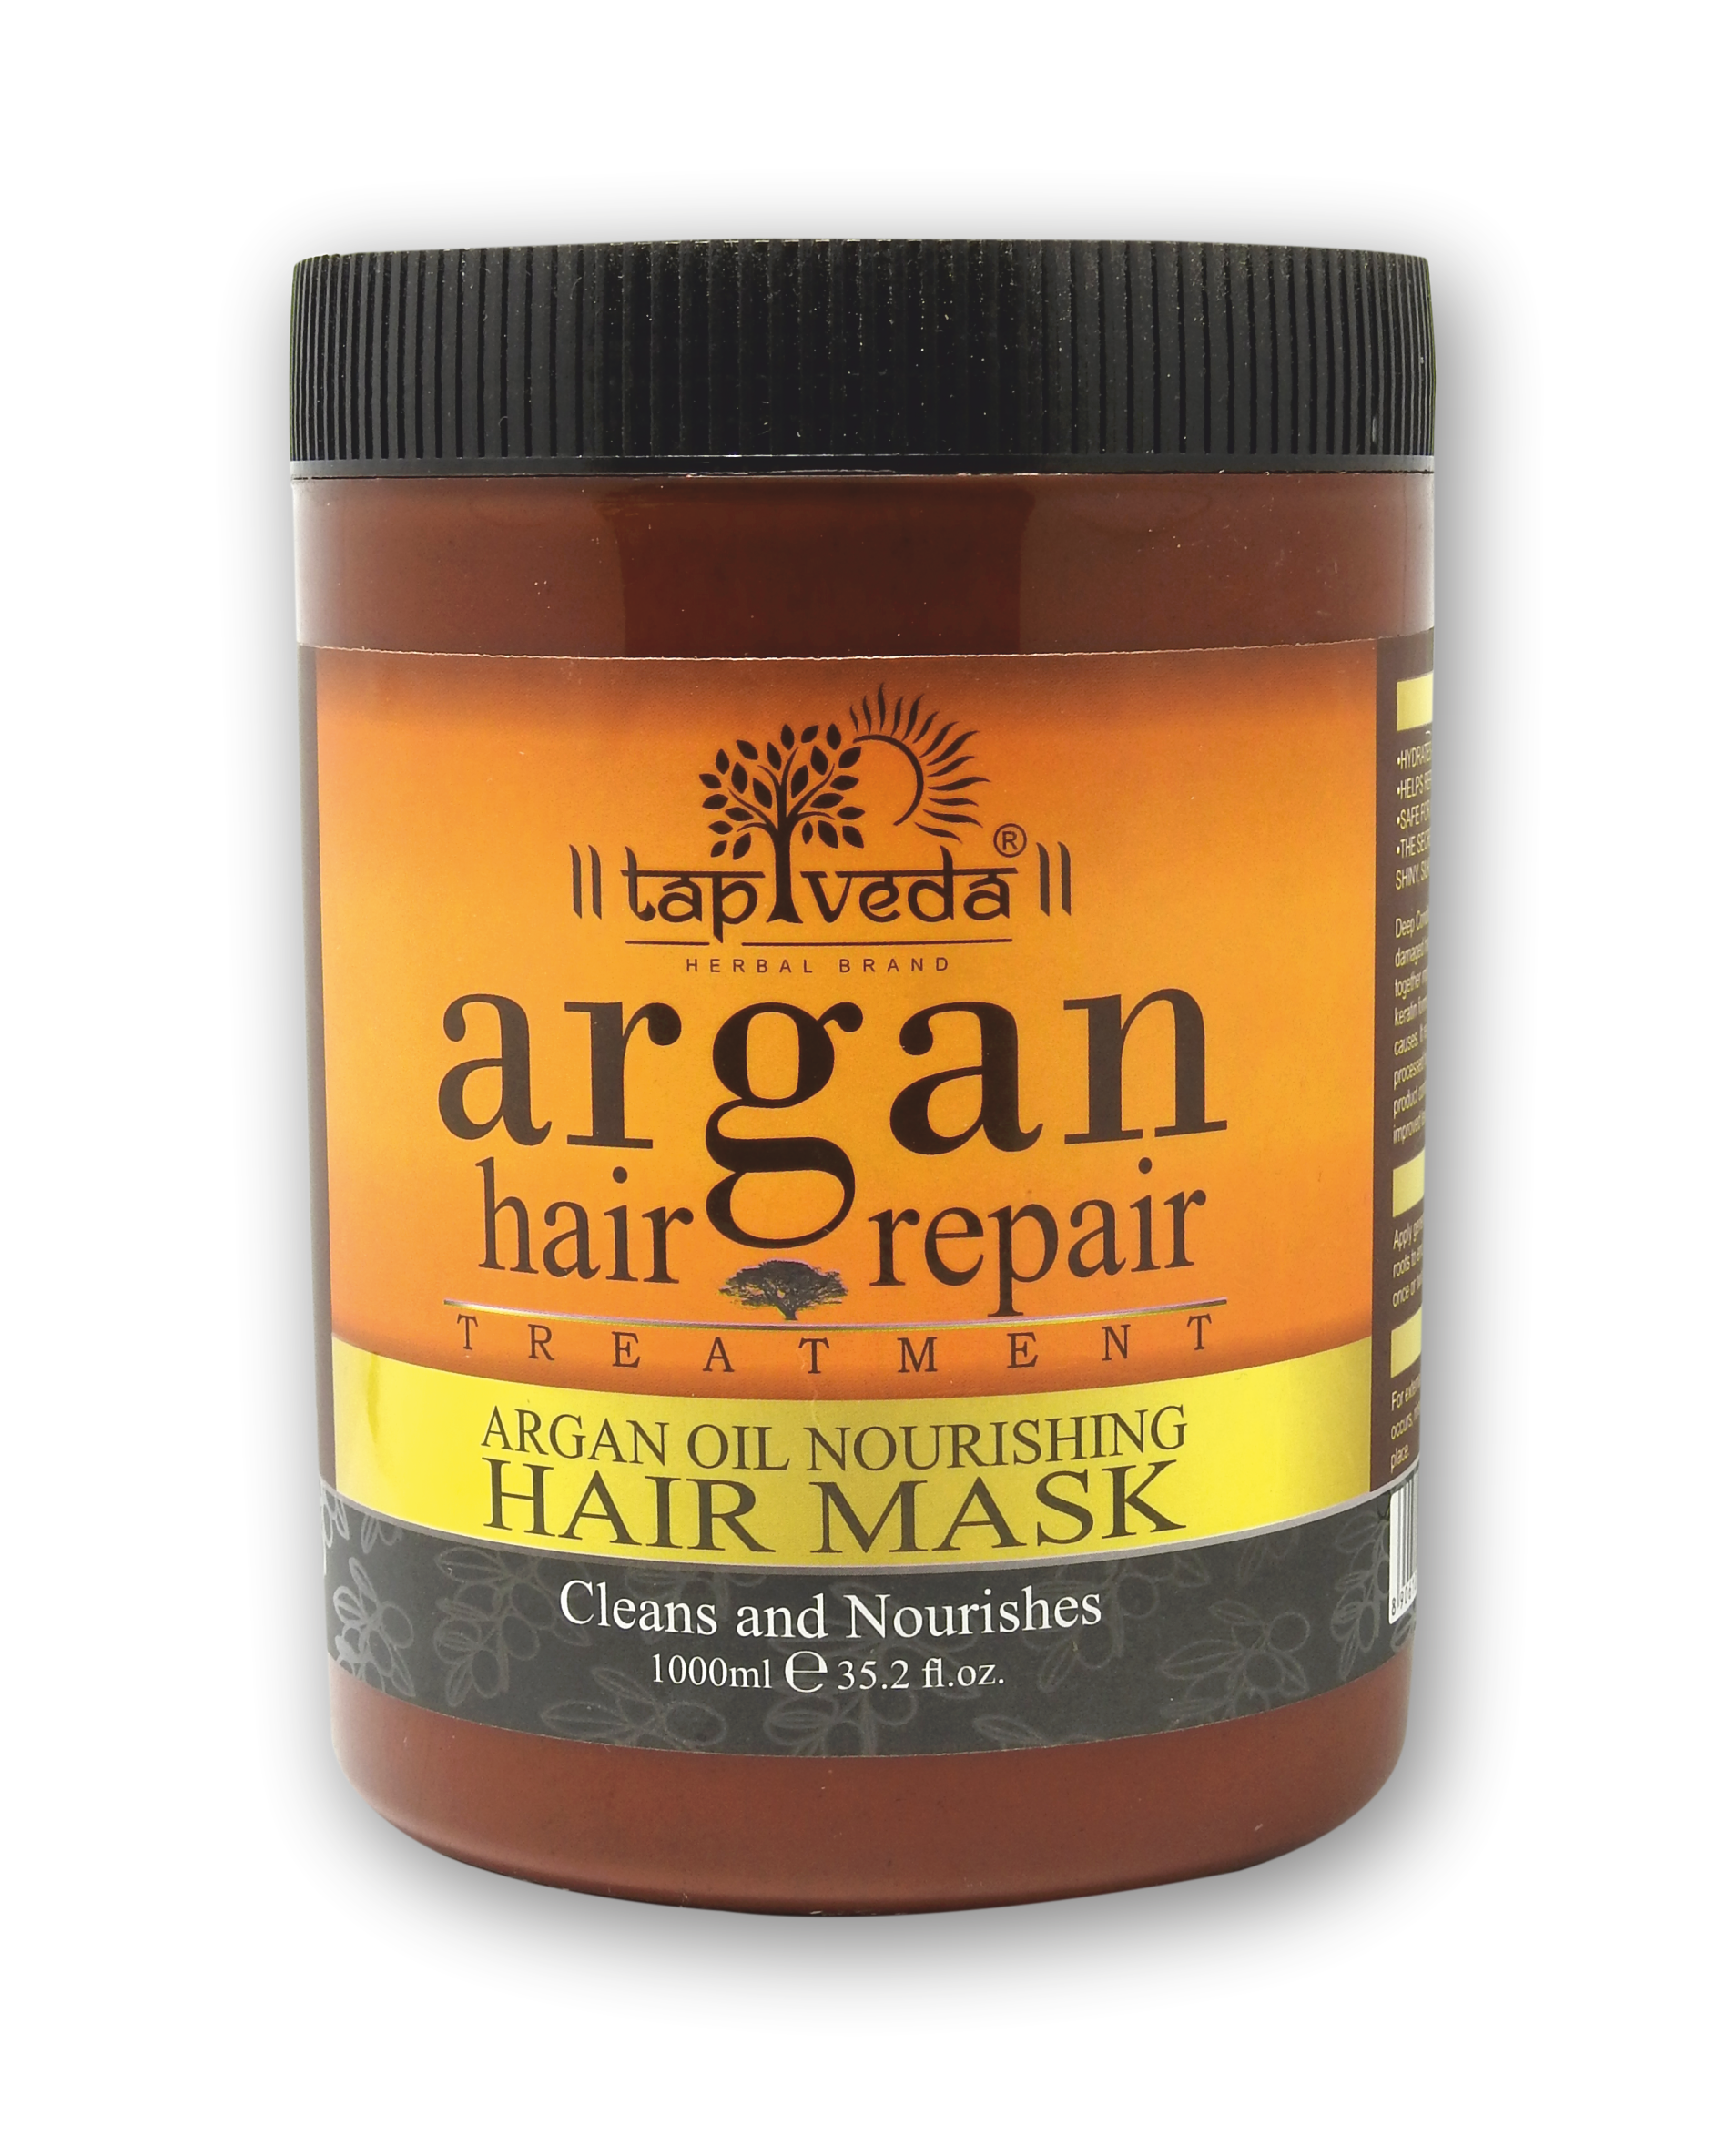 Argan hair mask